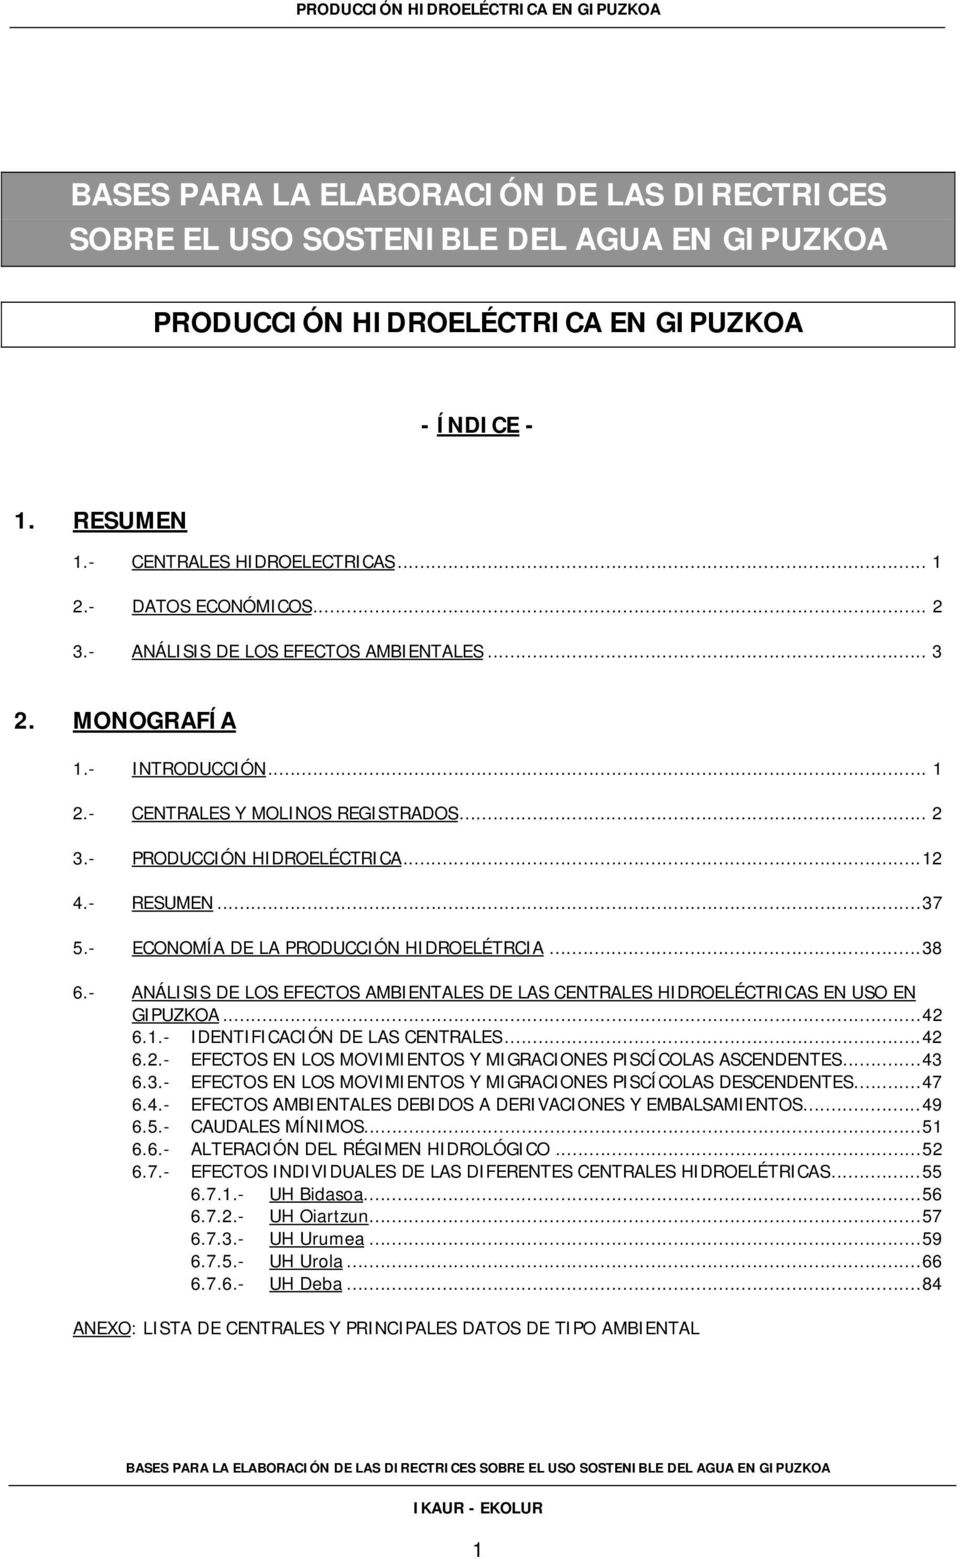 - ECONOMÍA DE LA PRODUCCIÓN HIDROELÉTRCIA...38 6.- ANÁLISIS DE LOS EFECTOS AMBIENTALES DE LAS CENTRALES HIDROELÉCTRICAS EN USO EN GIPUZKOA...42 